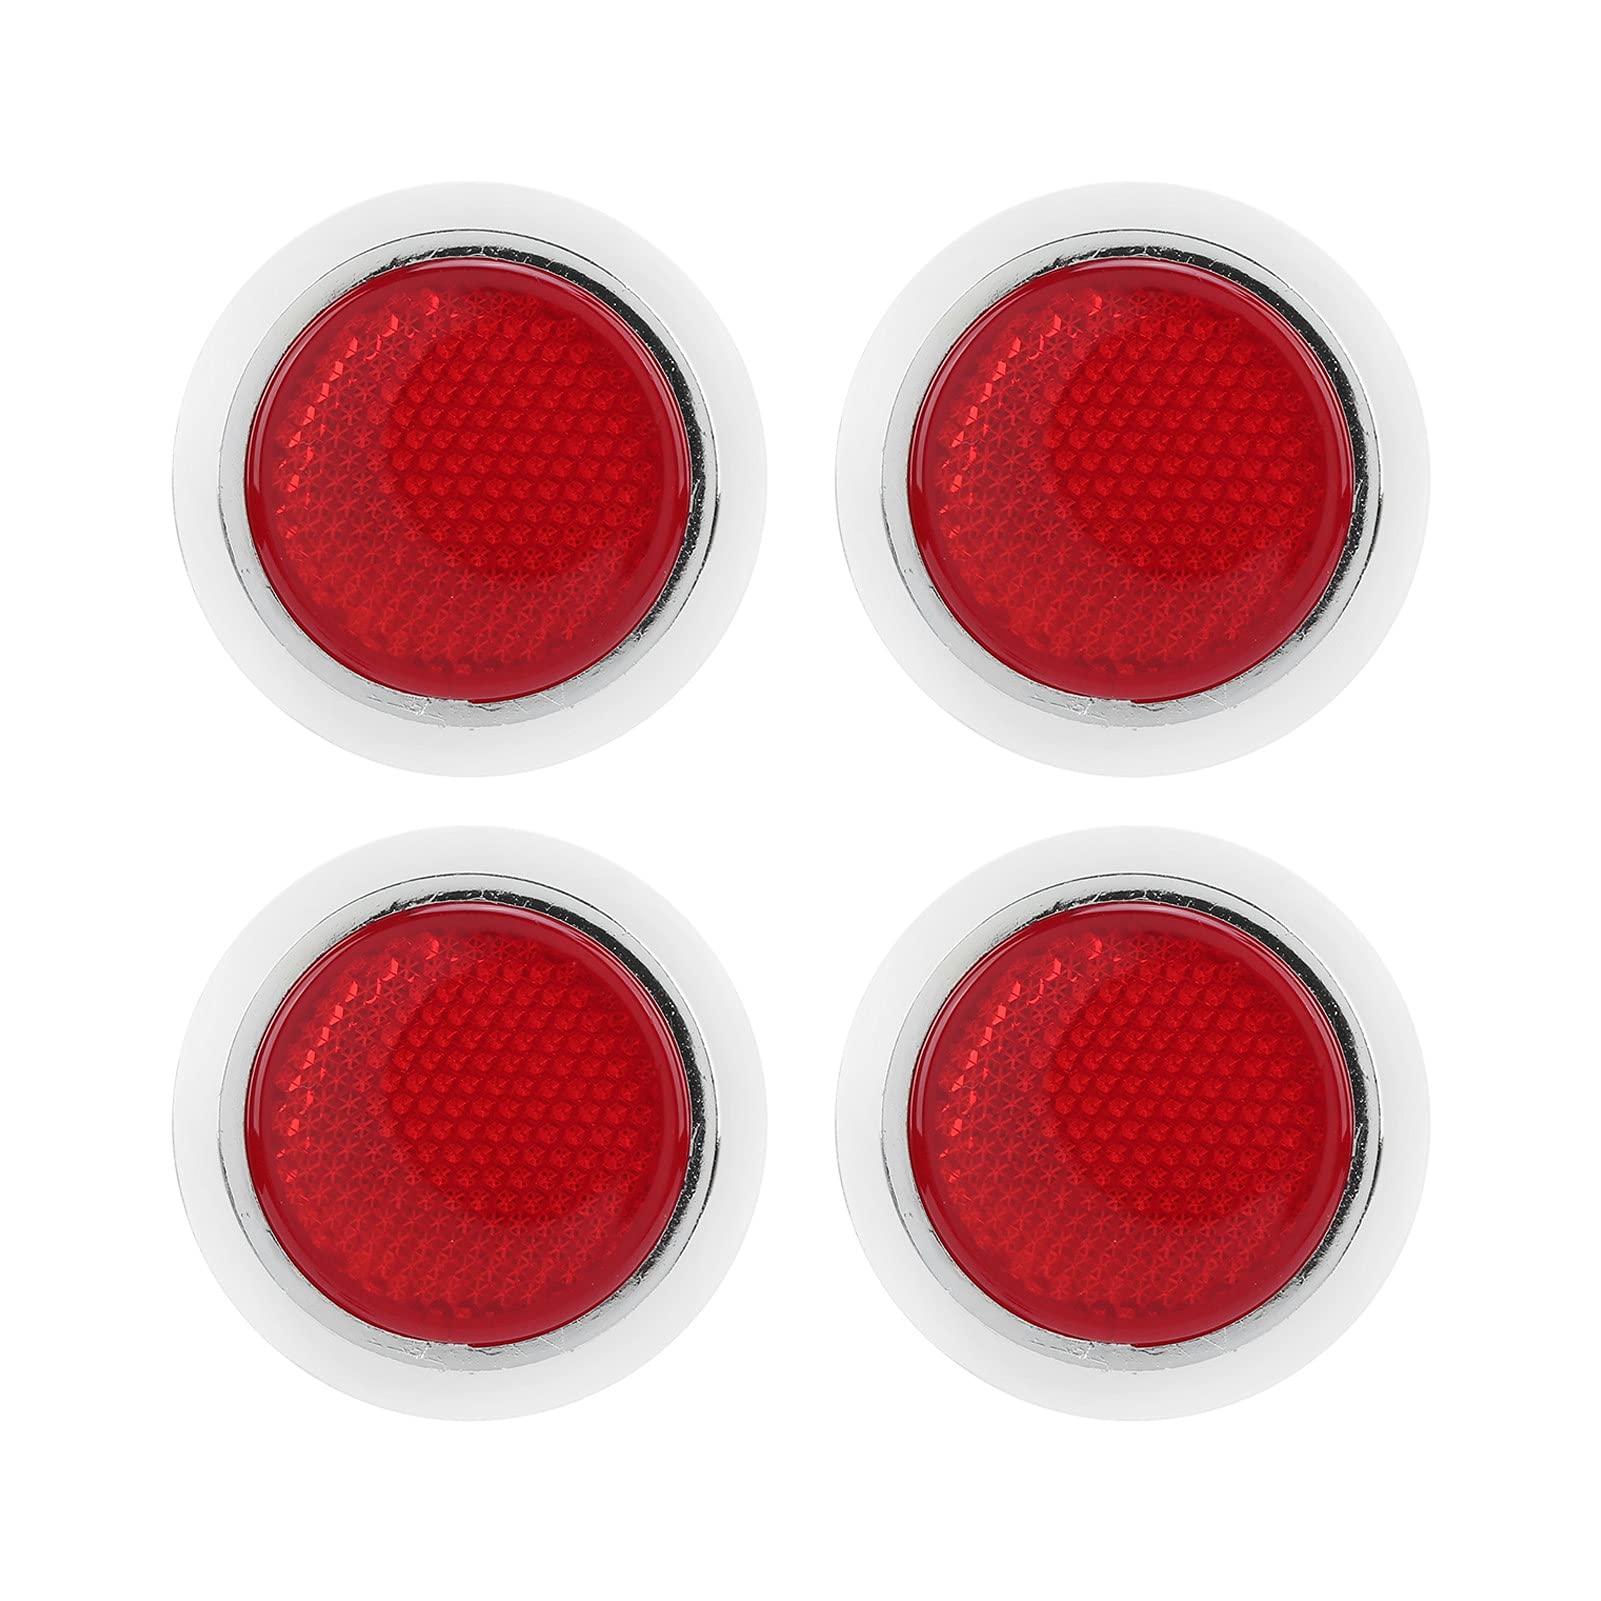 Ymiko Reflektierender Aufkleber, 4 STÜCKE Roter Reflektor Erhöhte Sichtbarkeit Runde Reflektierende Schutzverkleidung für Automobile Motorrad LKW Anhänger Rücklichter Reflektor ABS Chrom von Ymiko